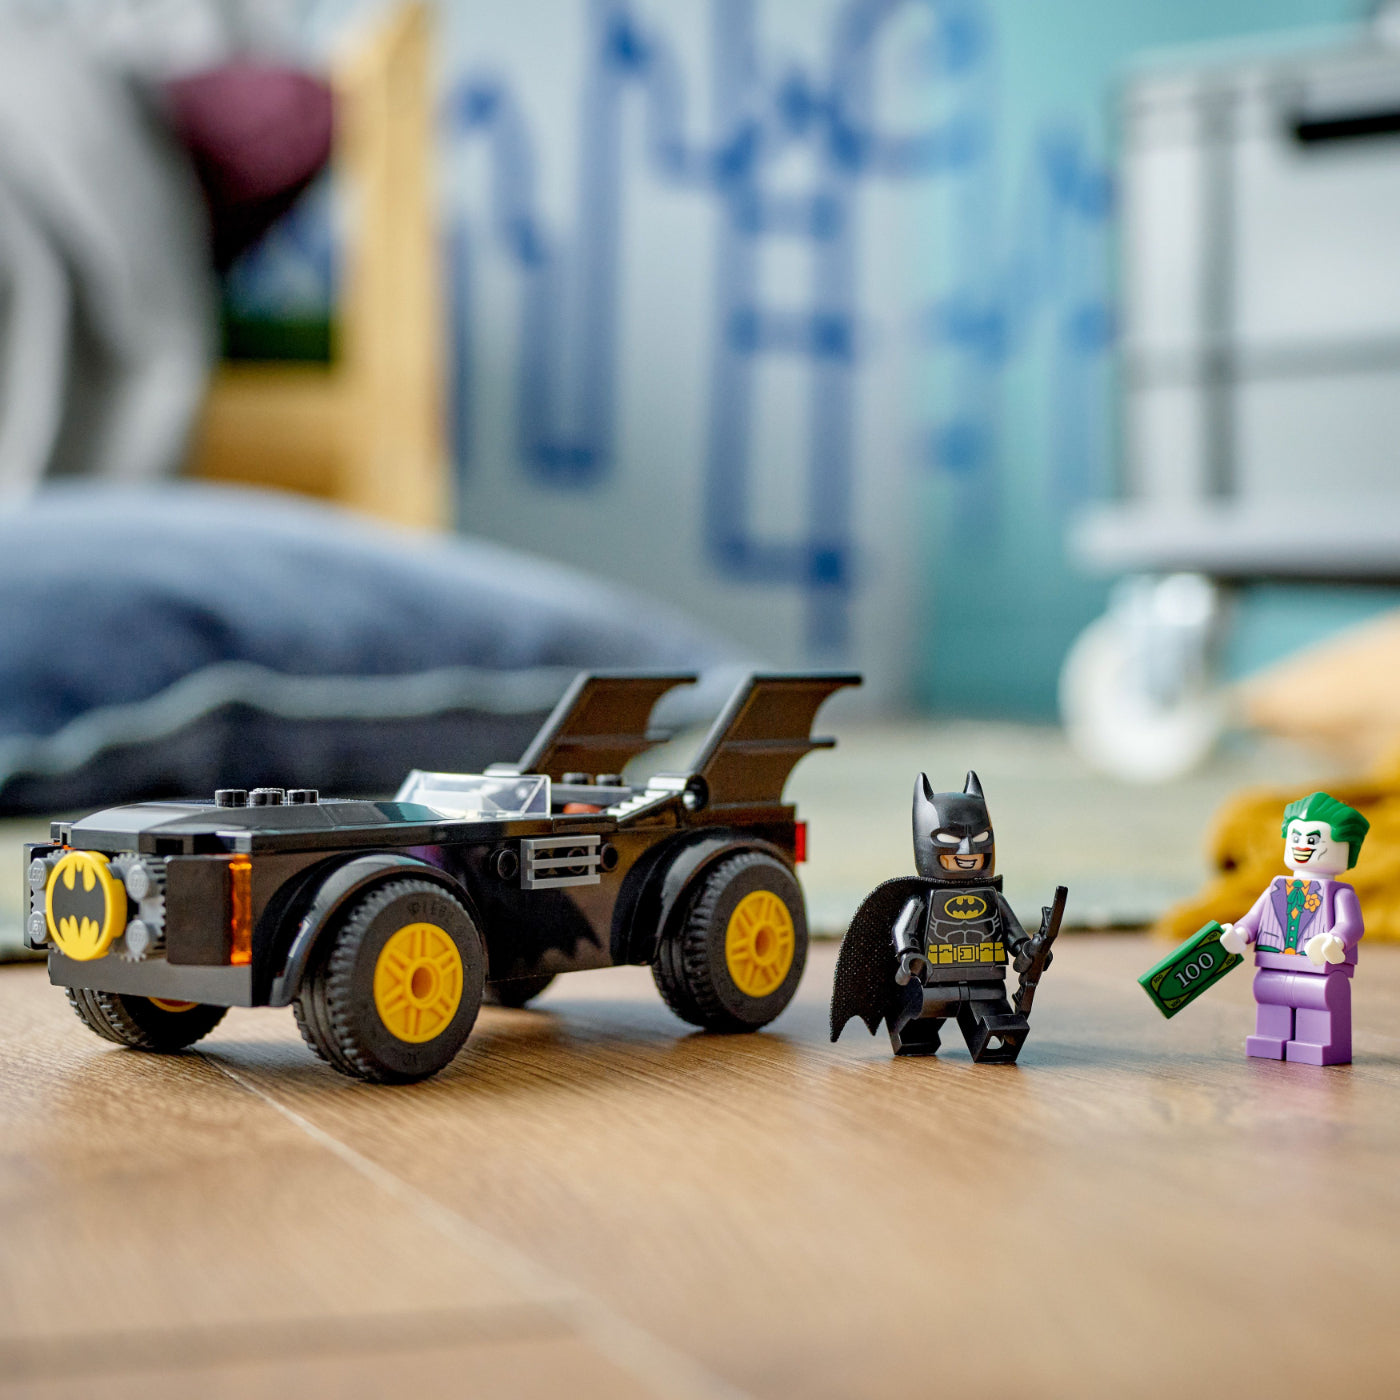 LEGO® DC Persecución en el Batmobile™: Batman™ vs. The Joker™ (76264)